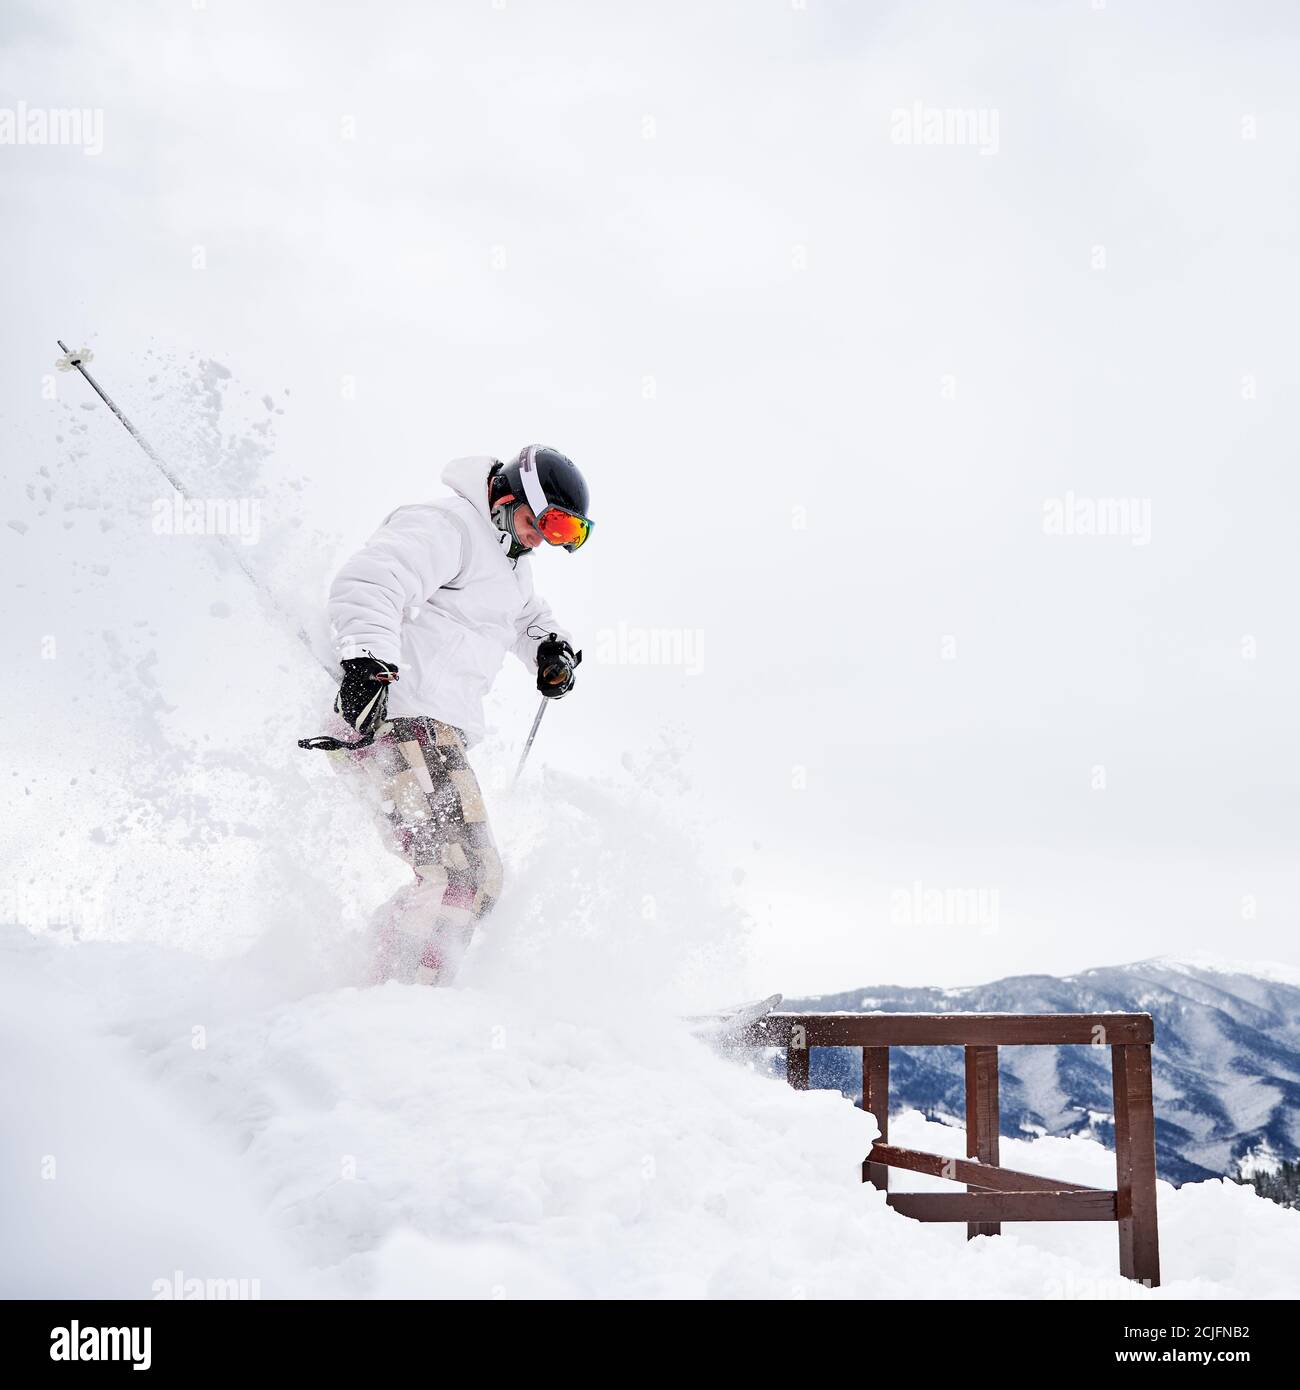 Winter Arten von Sport-Konzept. Skifahrer tragen Wintersport-Kostüm und Skiausrüstung tun Sprungtricks in der Wintersaison. Animation im Skigebiet in den Bergen, Seitenansicht Stockfoto